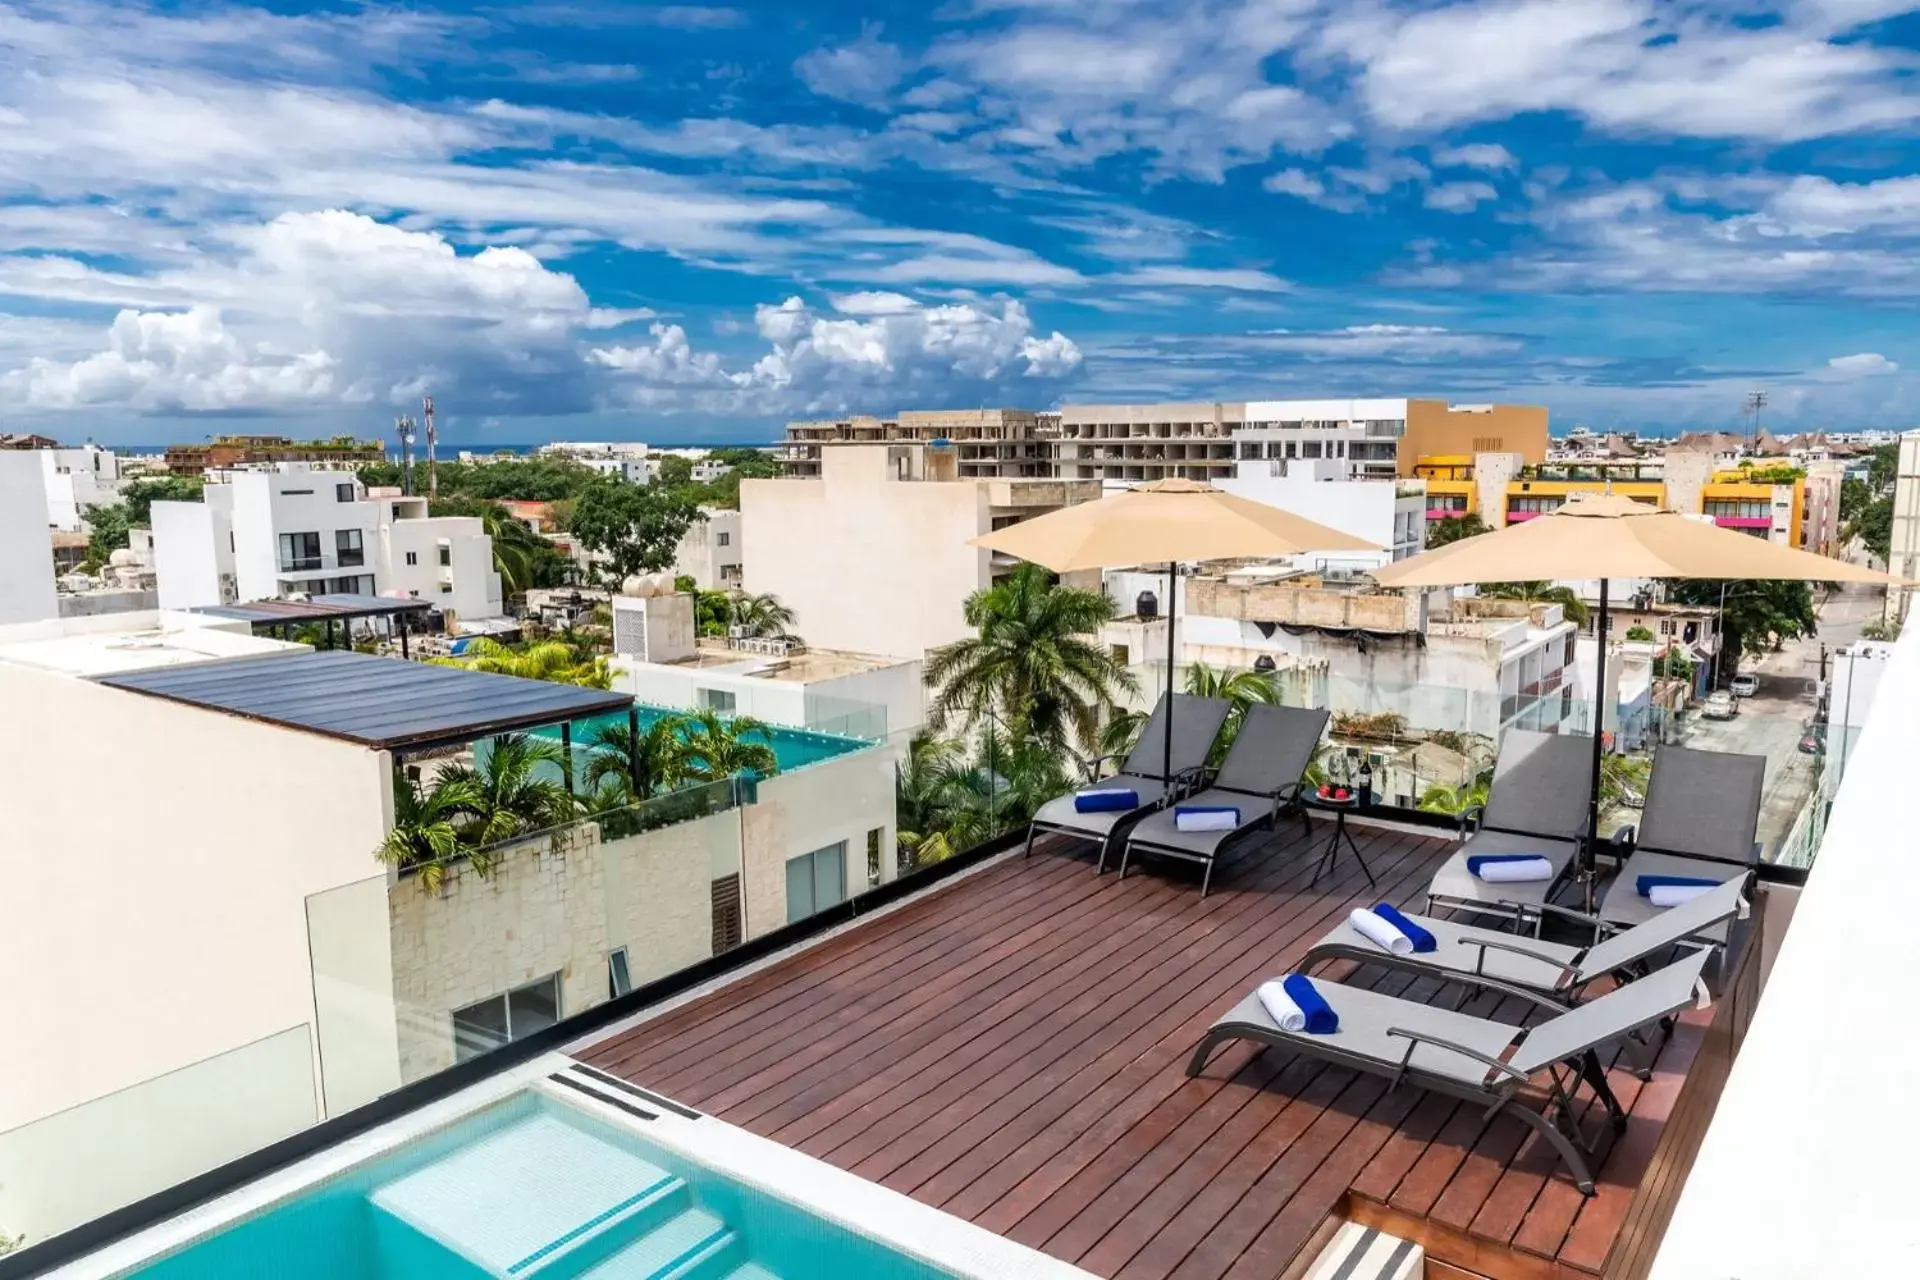 Balcony/Terrace, Pool View in Hotelito del Mar Playa del Carmen